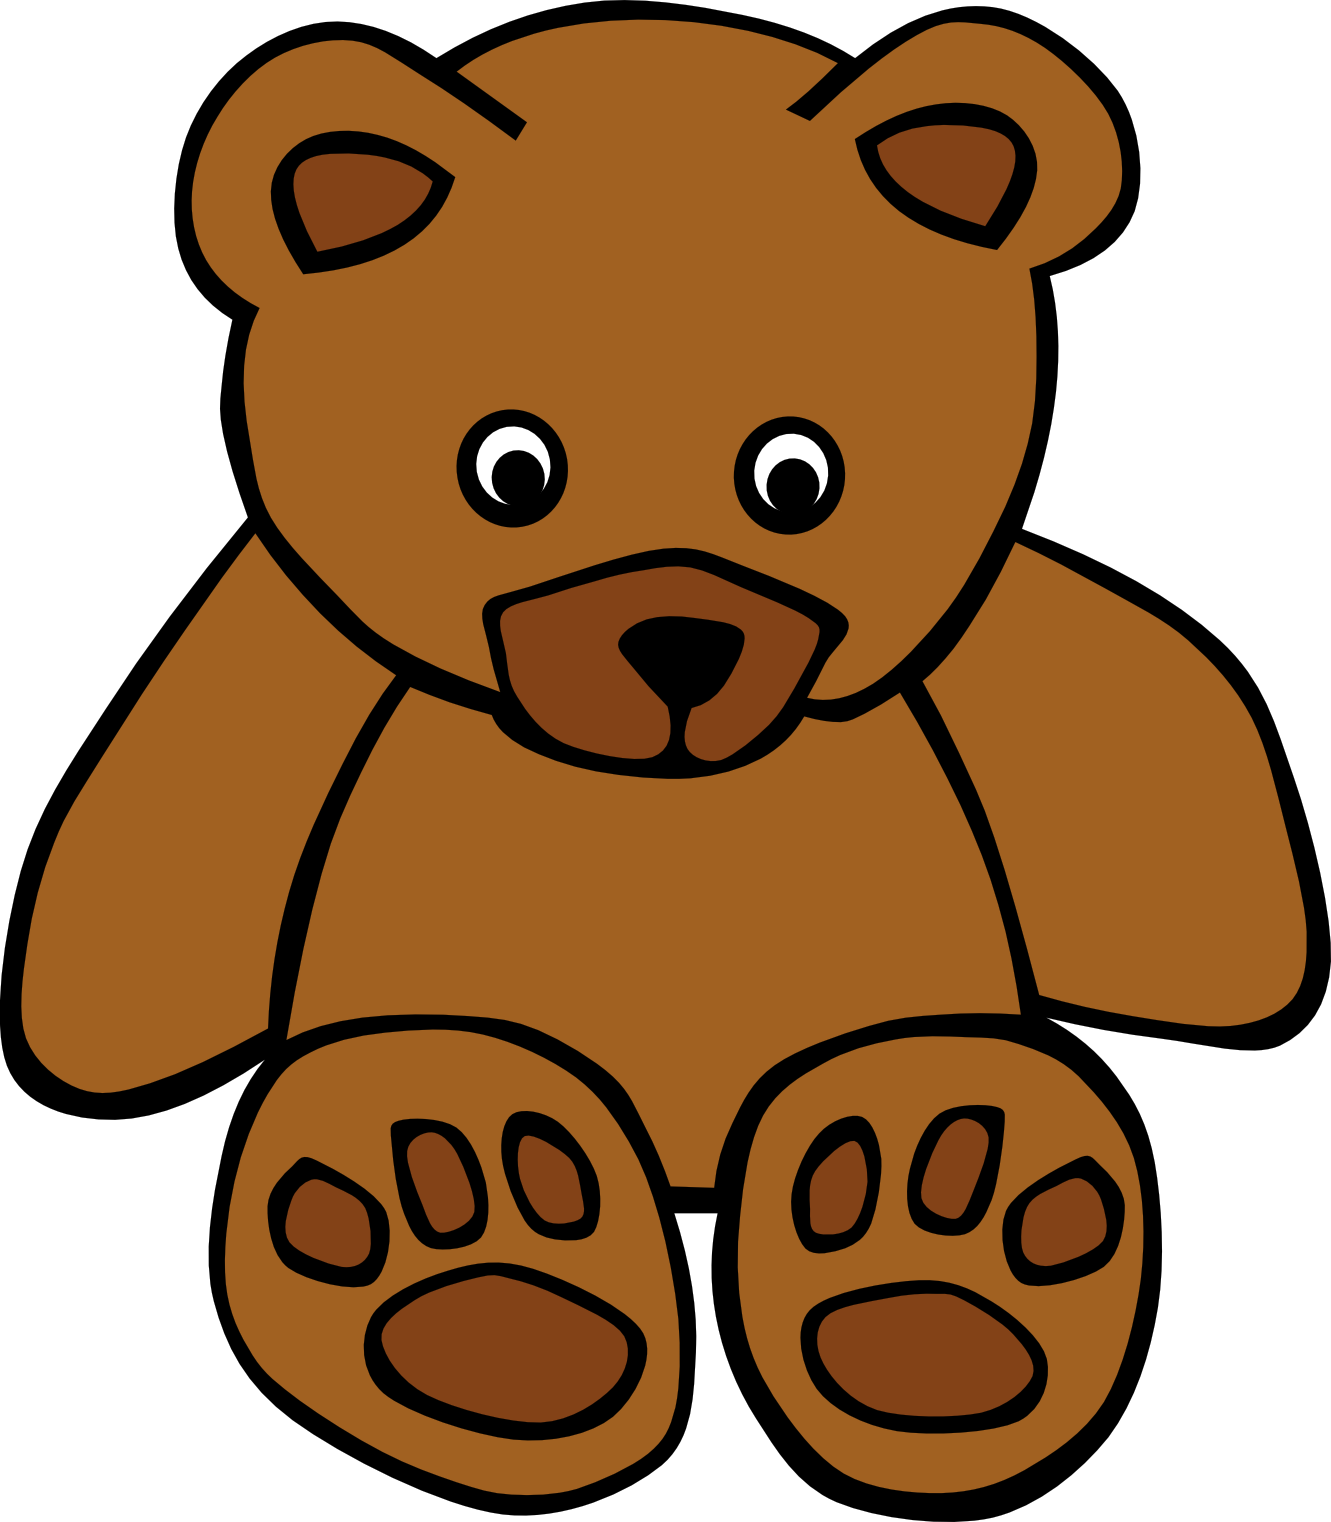 Bear drawing free image download